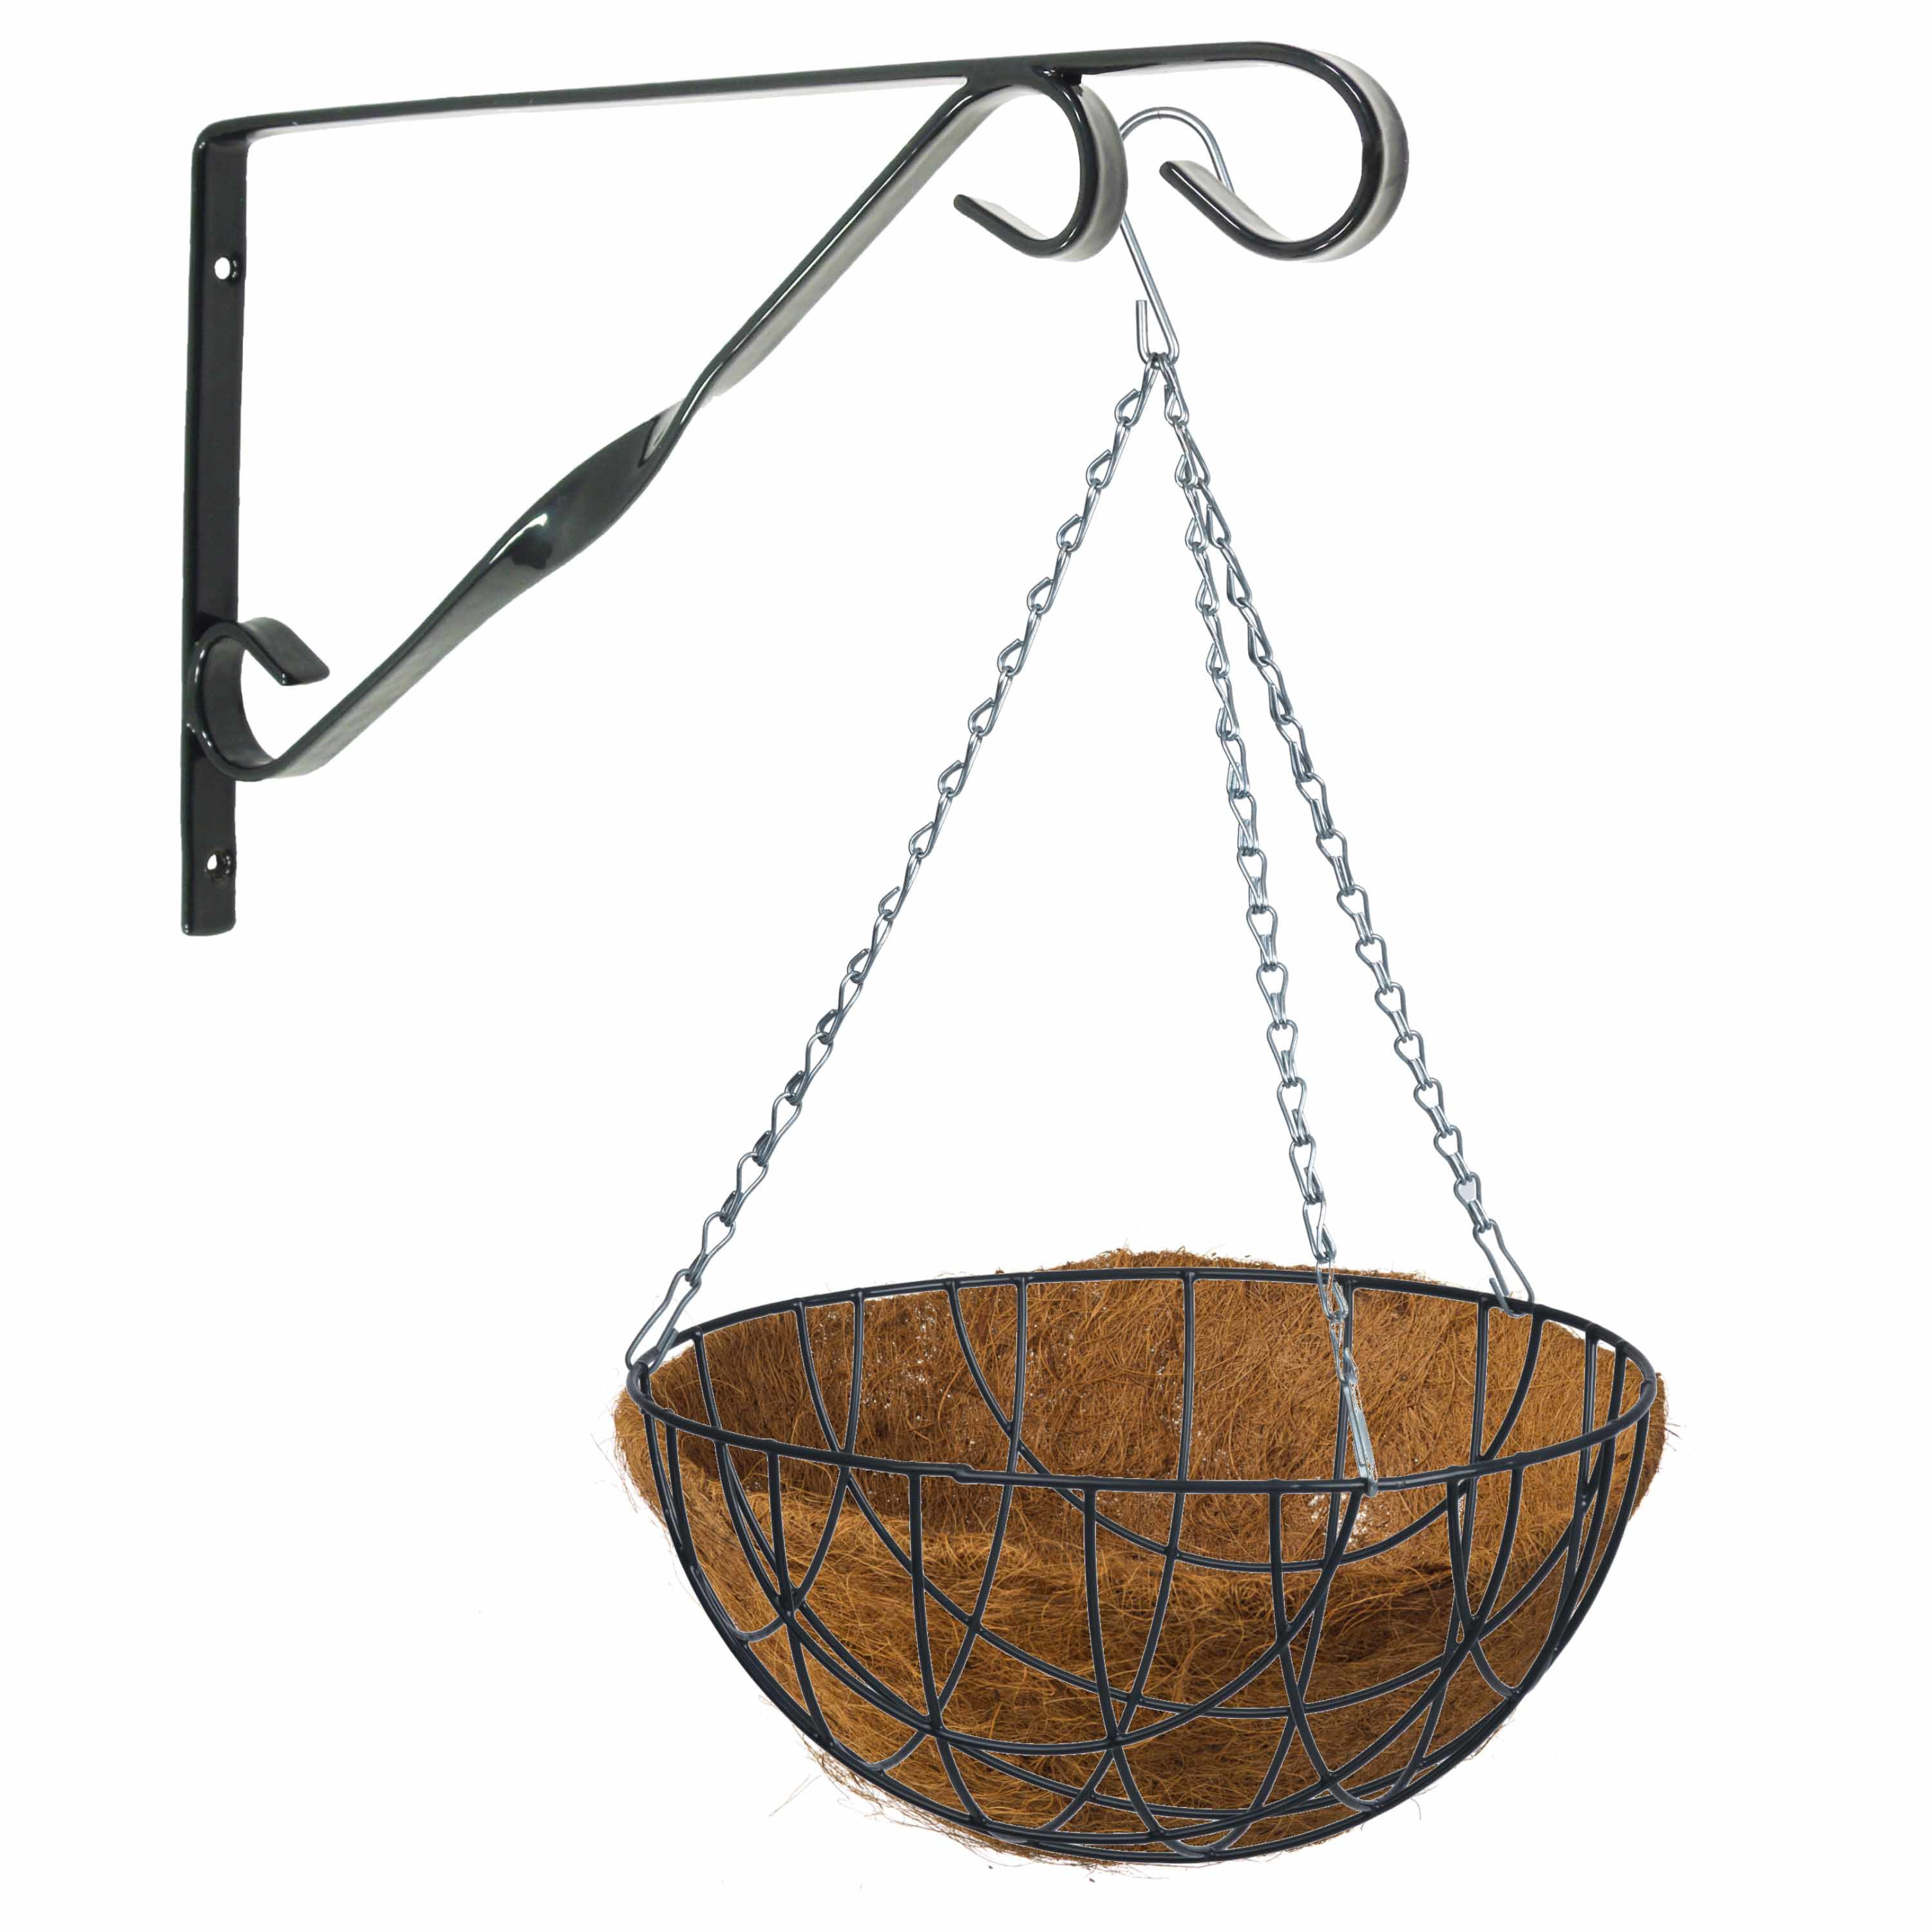 Hanging basket 40 cm met klassieke muurhaak grijs en kokos inlegvel metaal complete hangmand set